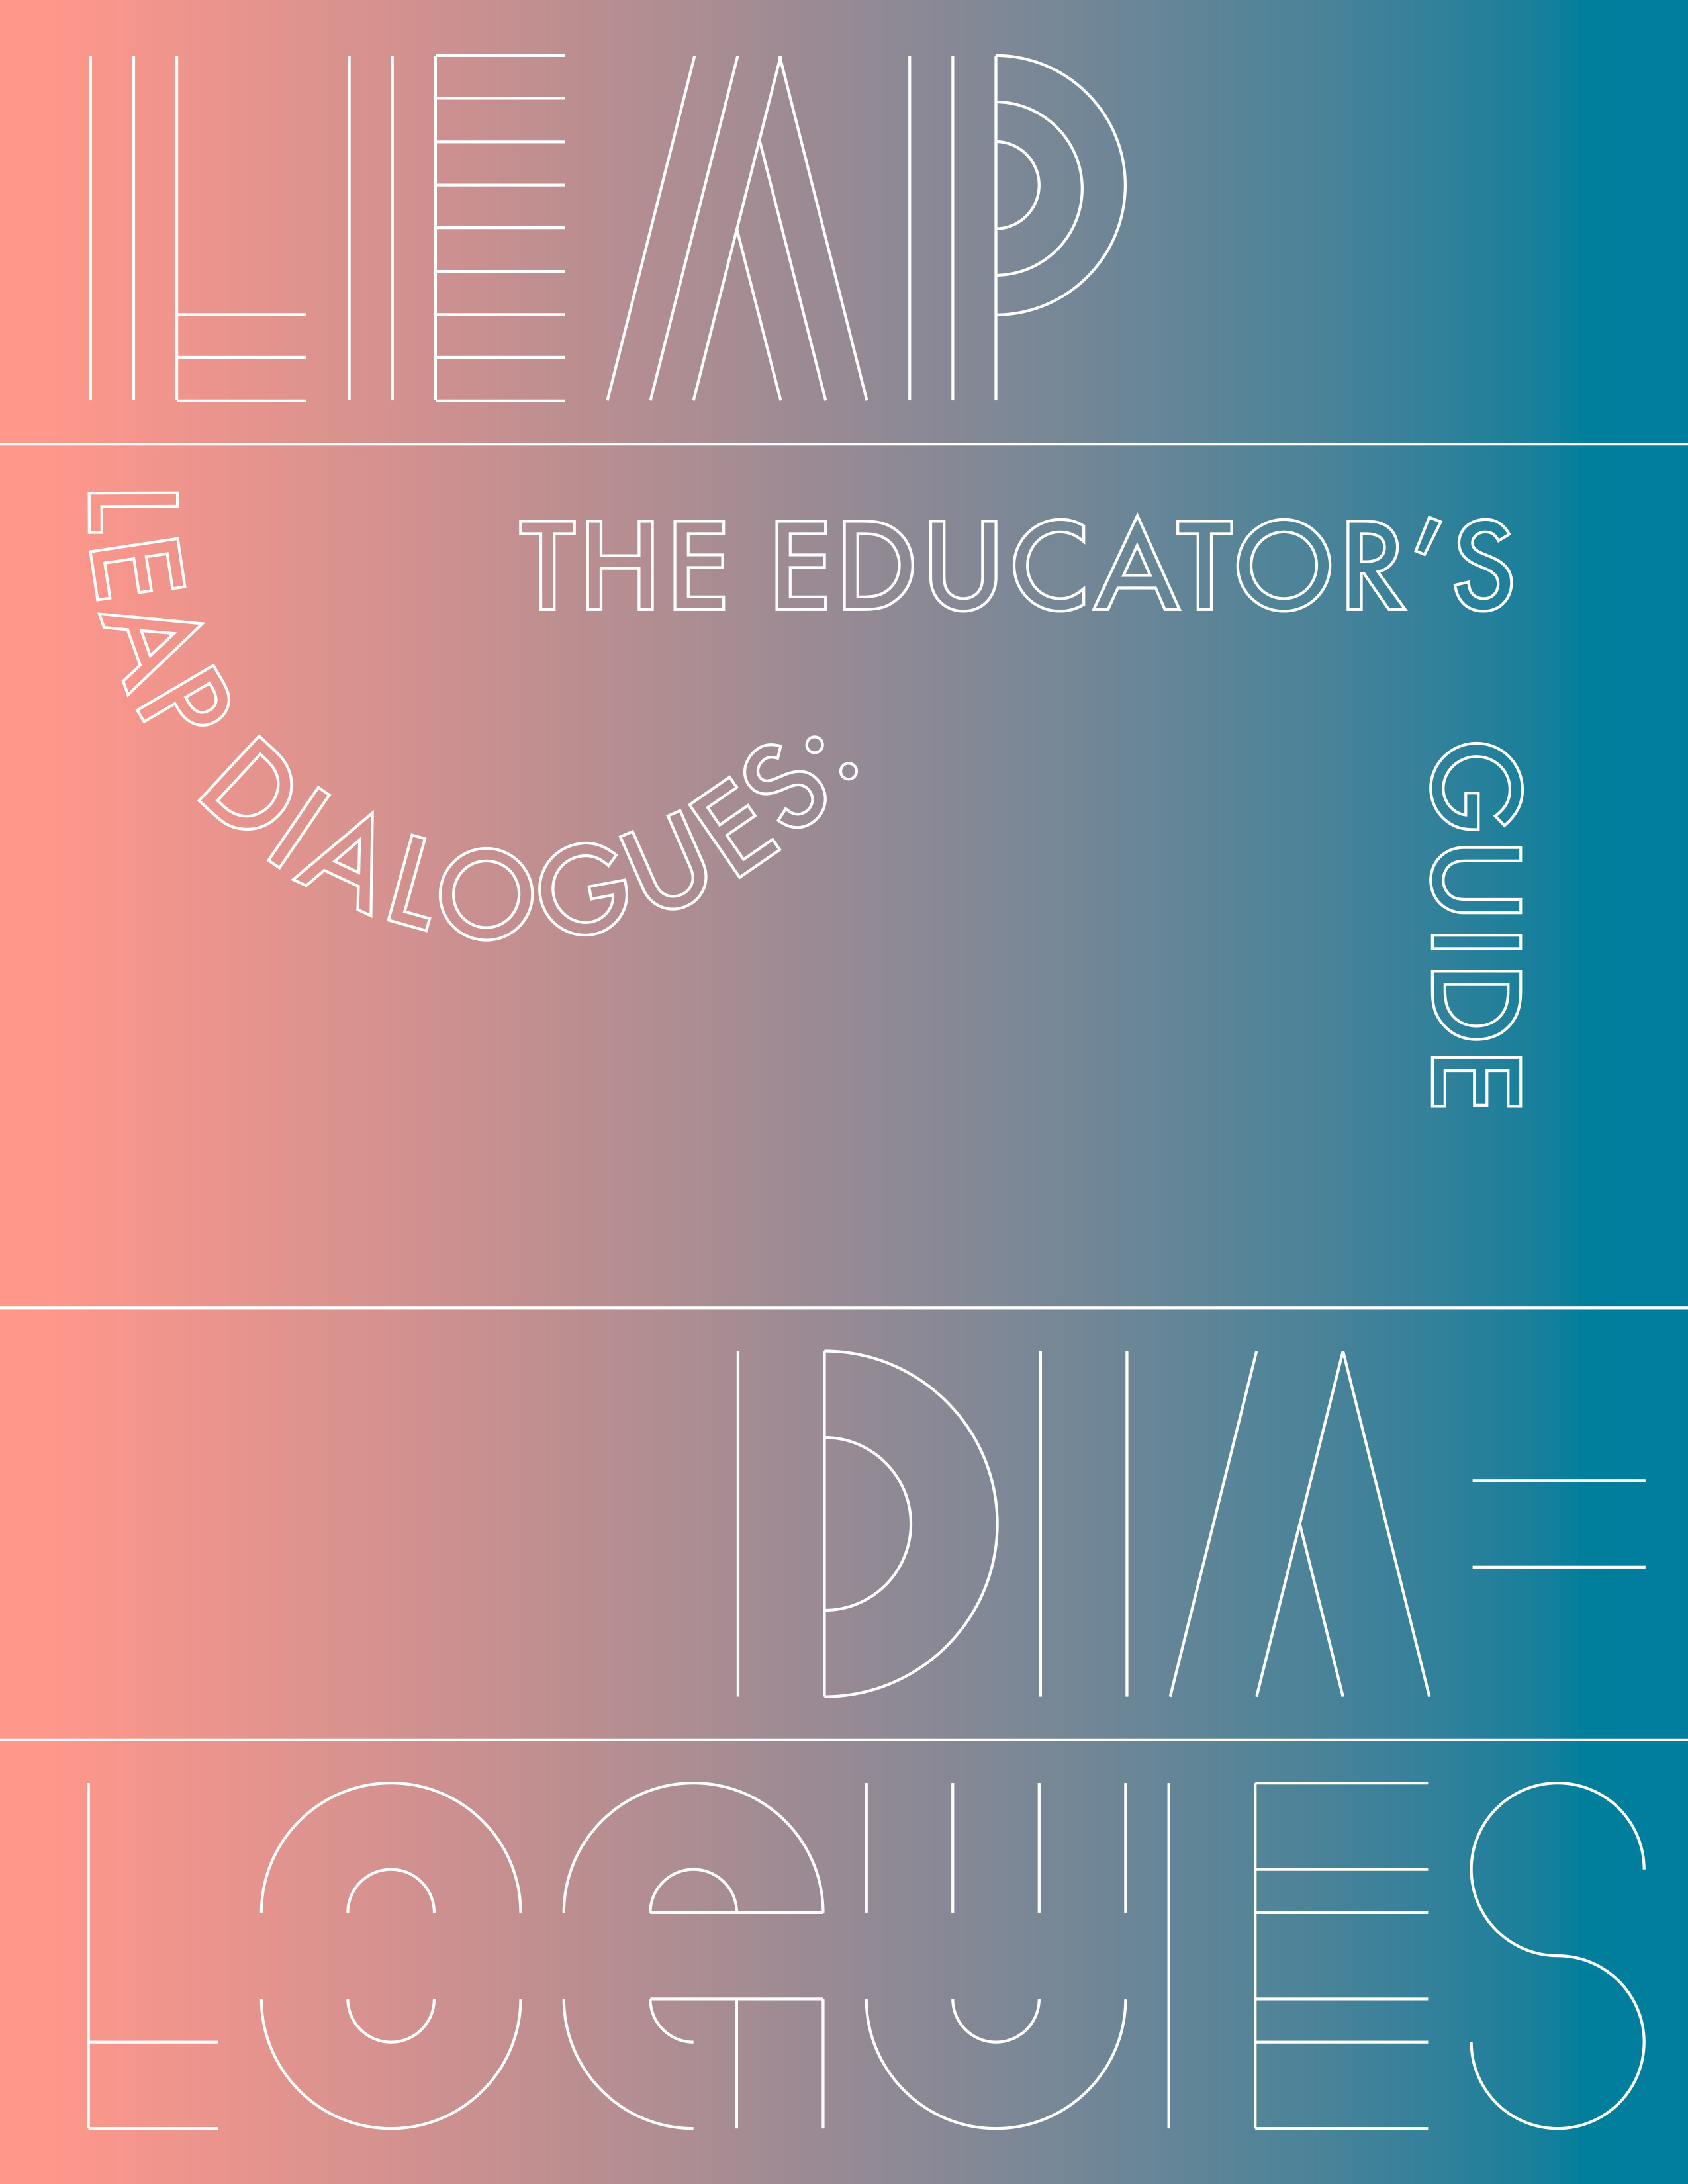 Designmatters LEAP Educators Guide